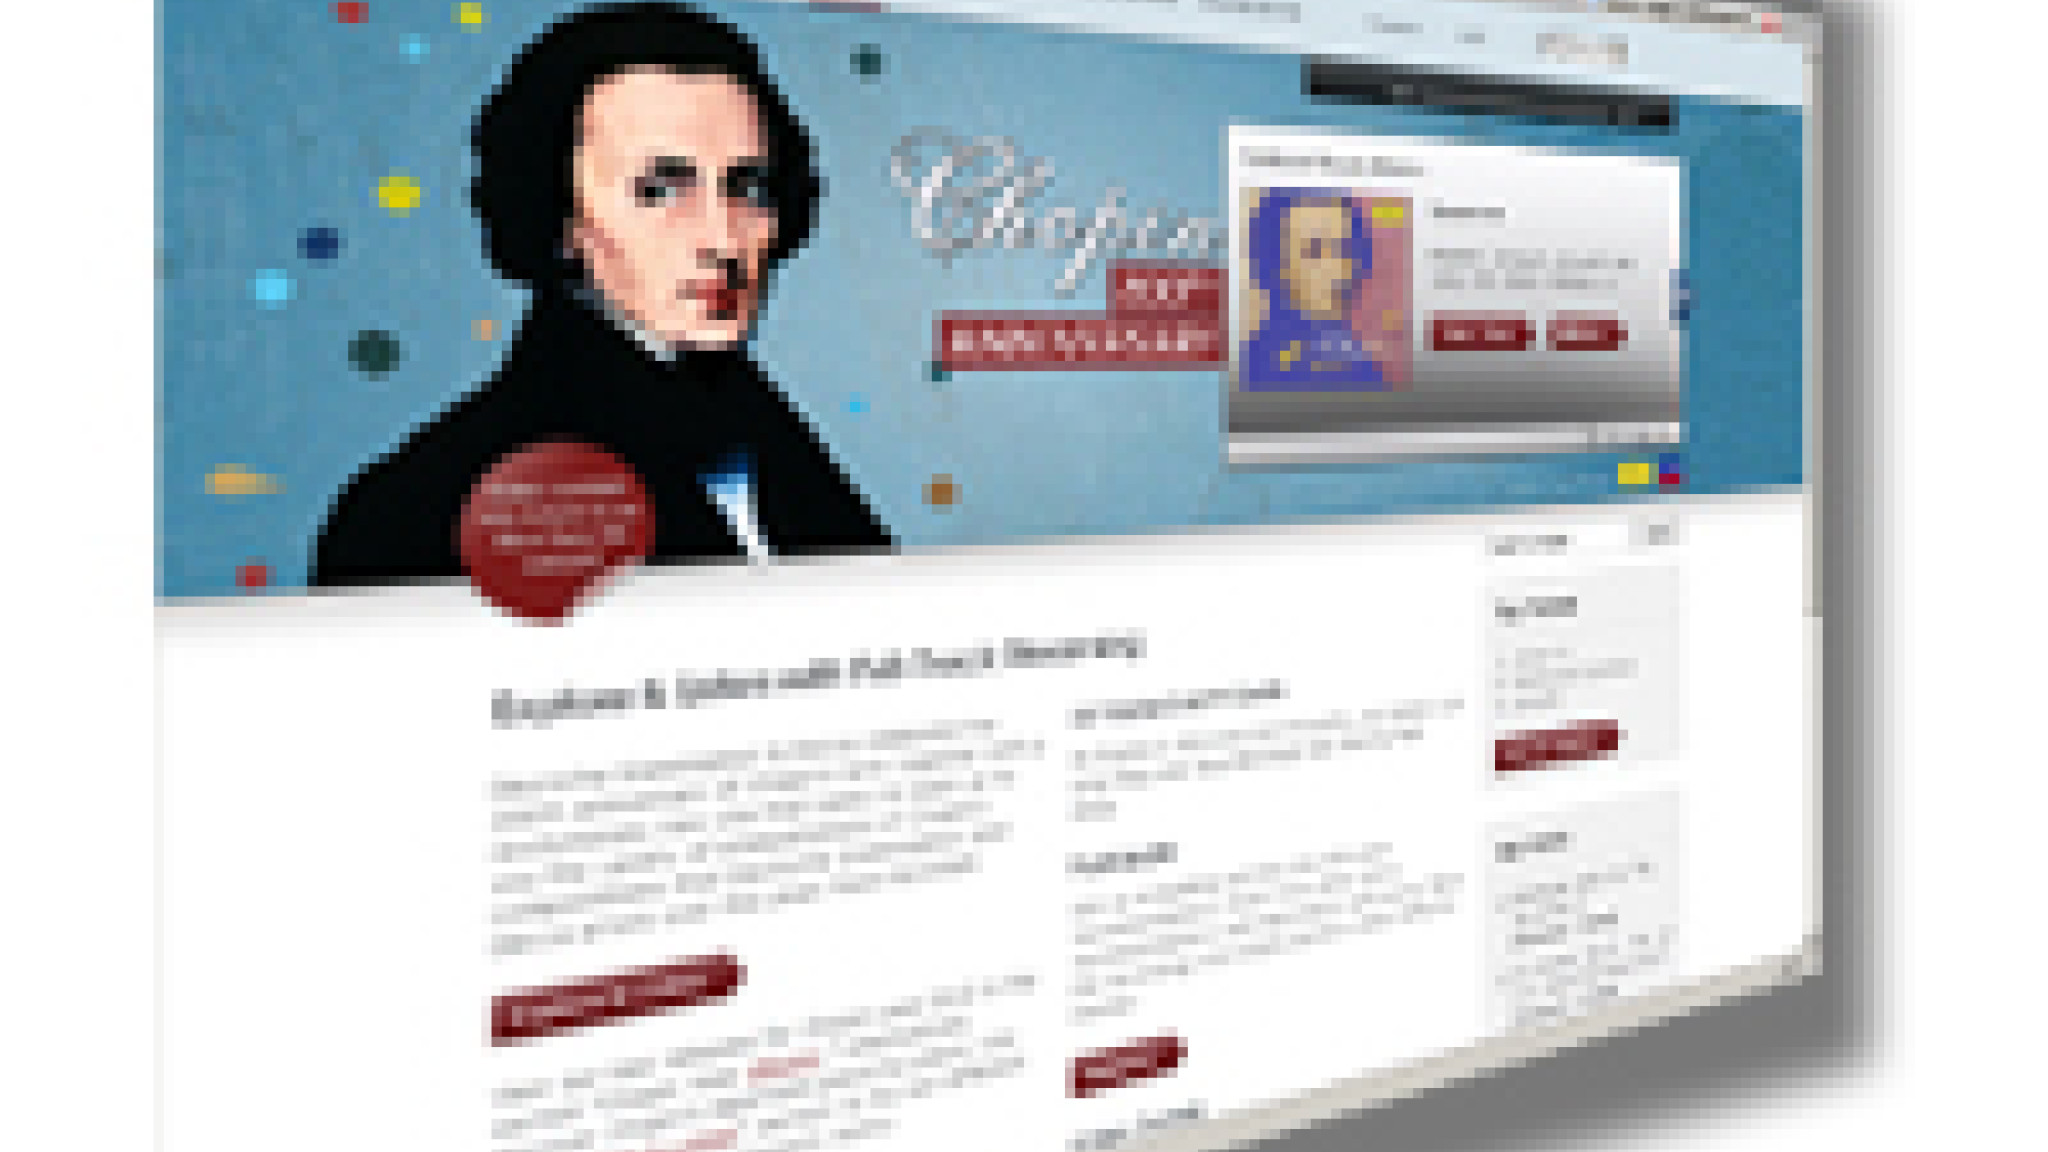 www.200chopin.com - Neue Website zu Frédéric Chopin